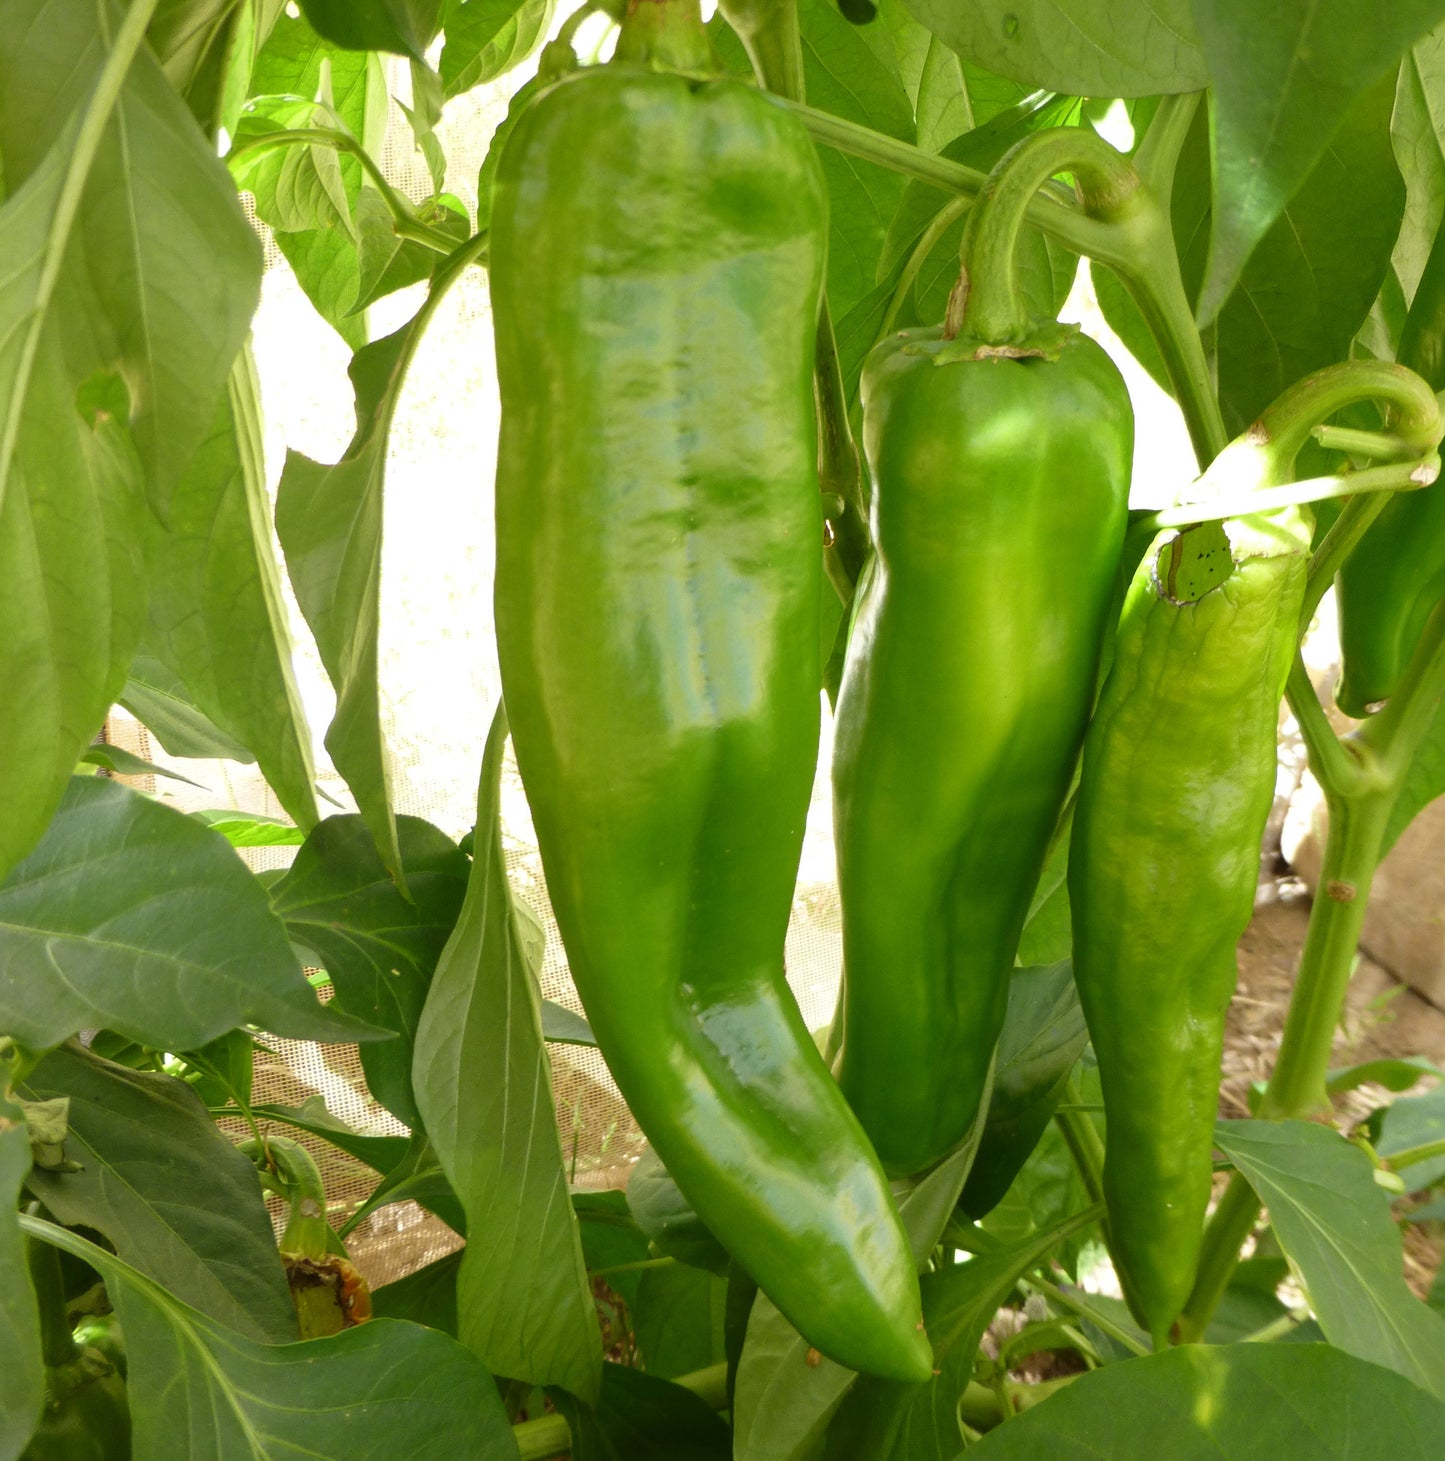 anaheim chile pepper organically grown